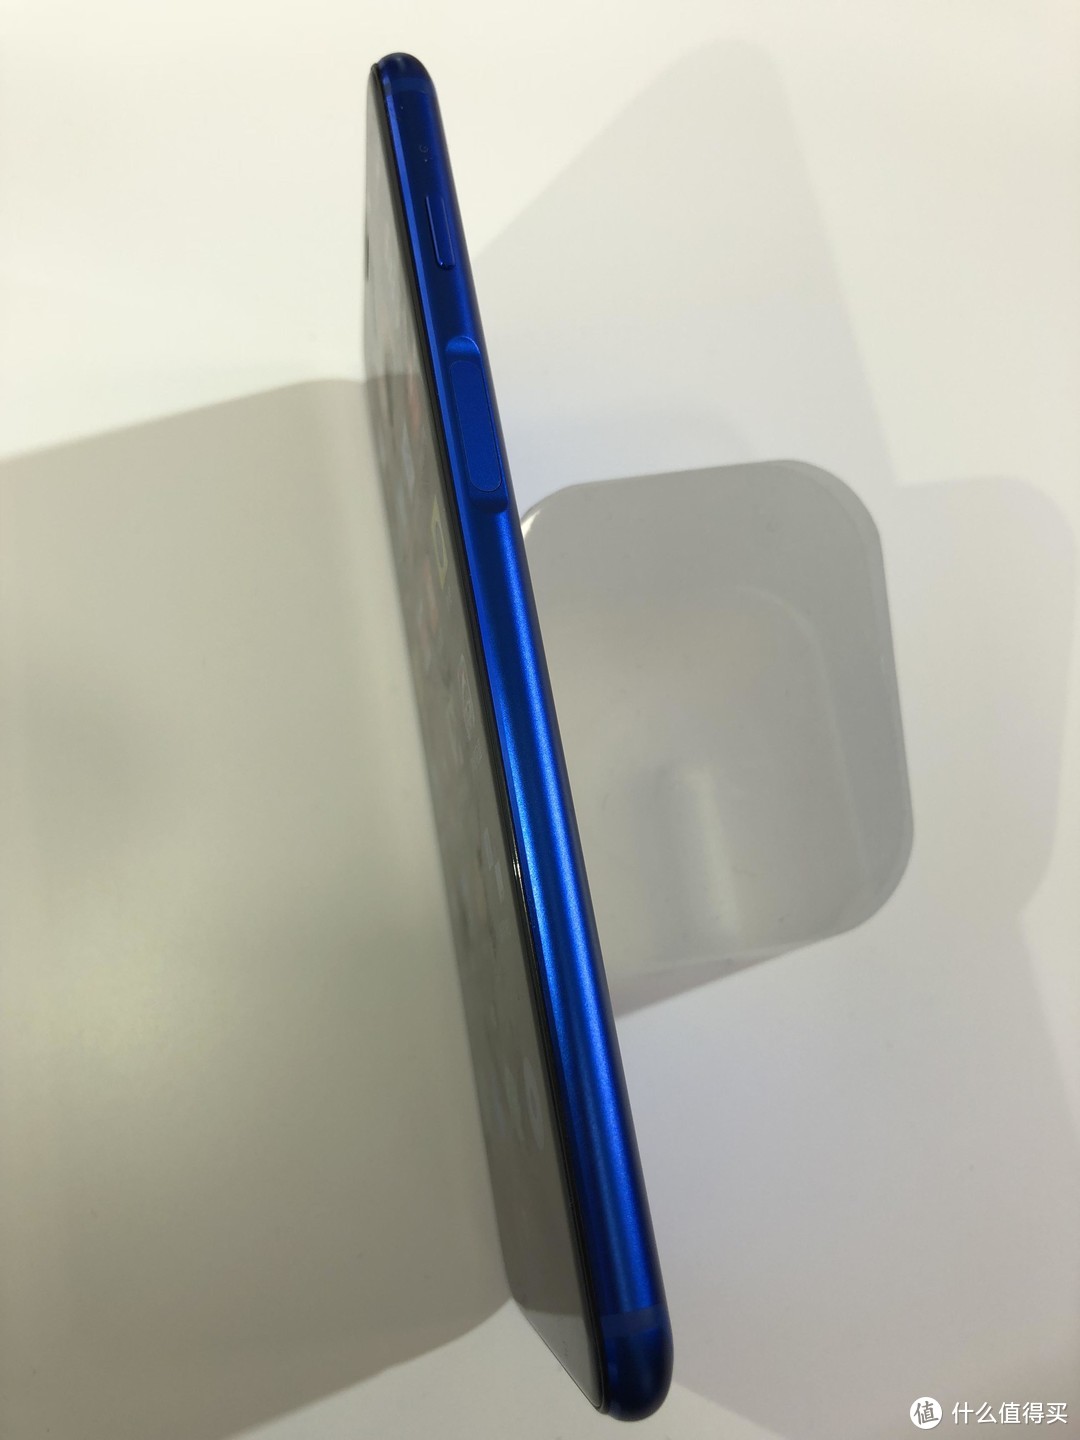 更快的千元“全面屏”— Meizu 魅族 魅蓝S6 智能手机 快速上手